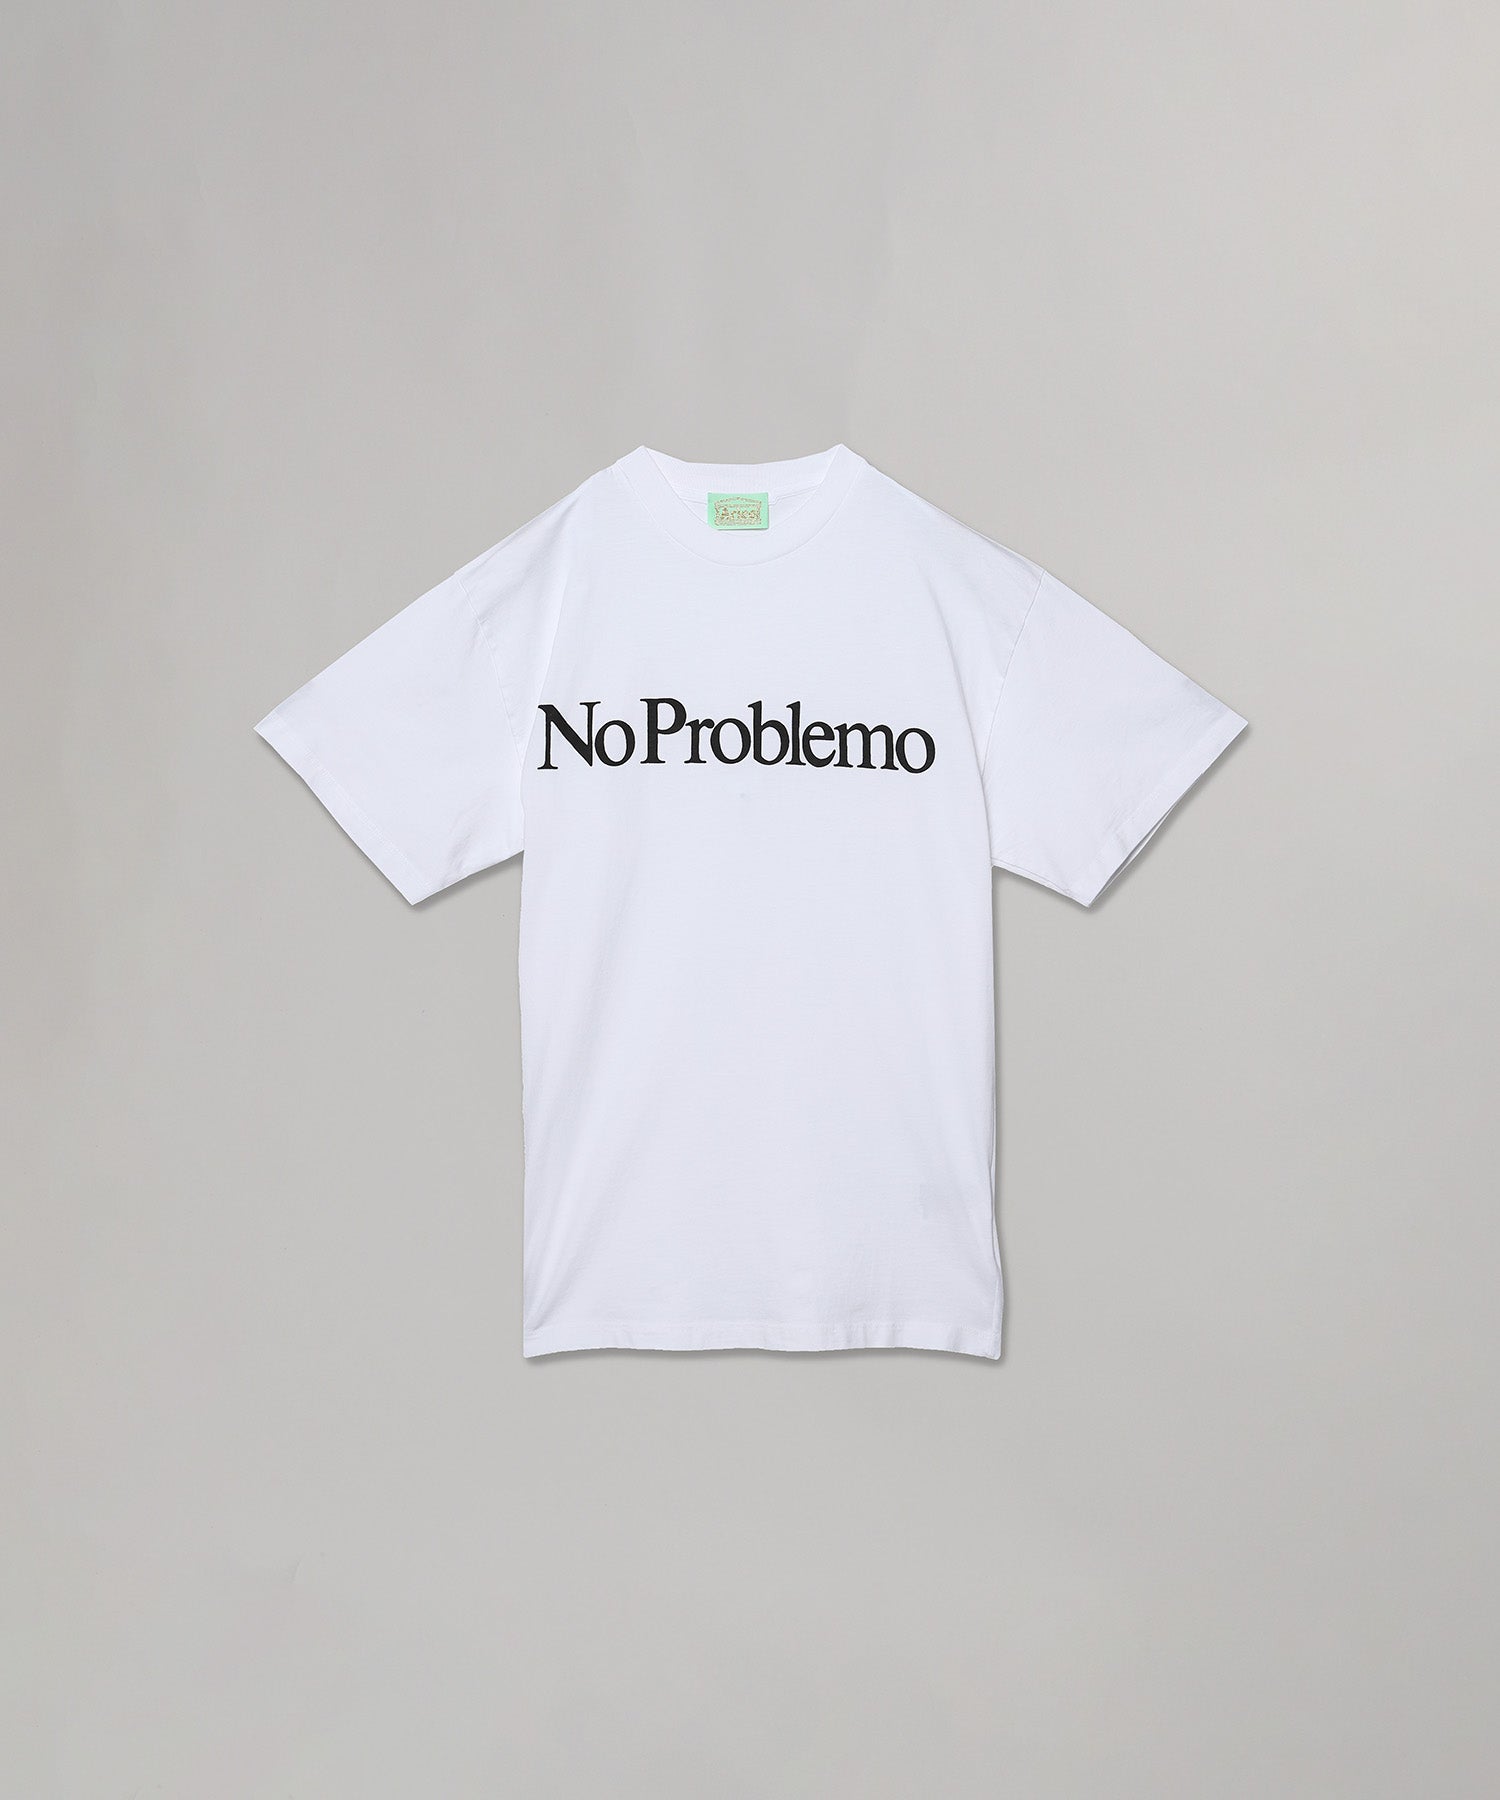 Aries No Problemo Tシャツ イタリア製 ホワイト Mサイズ